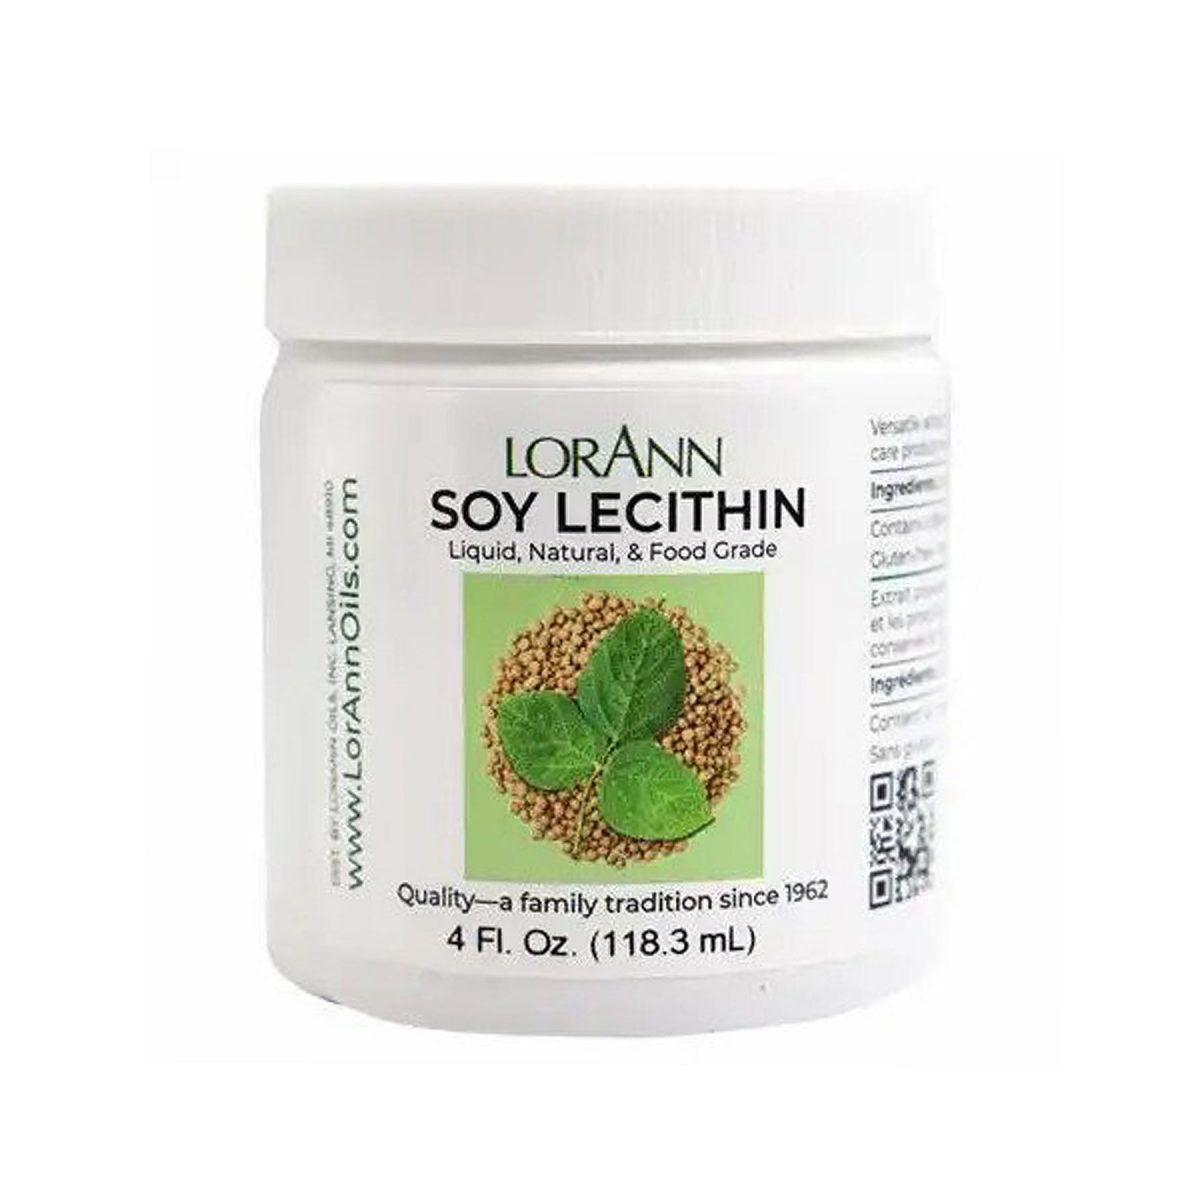 lorann-soy-lecithin-4oz